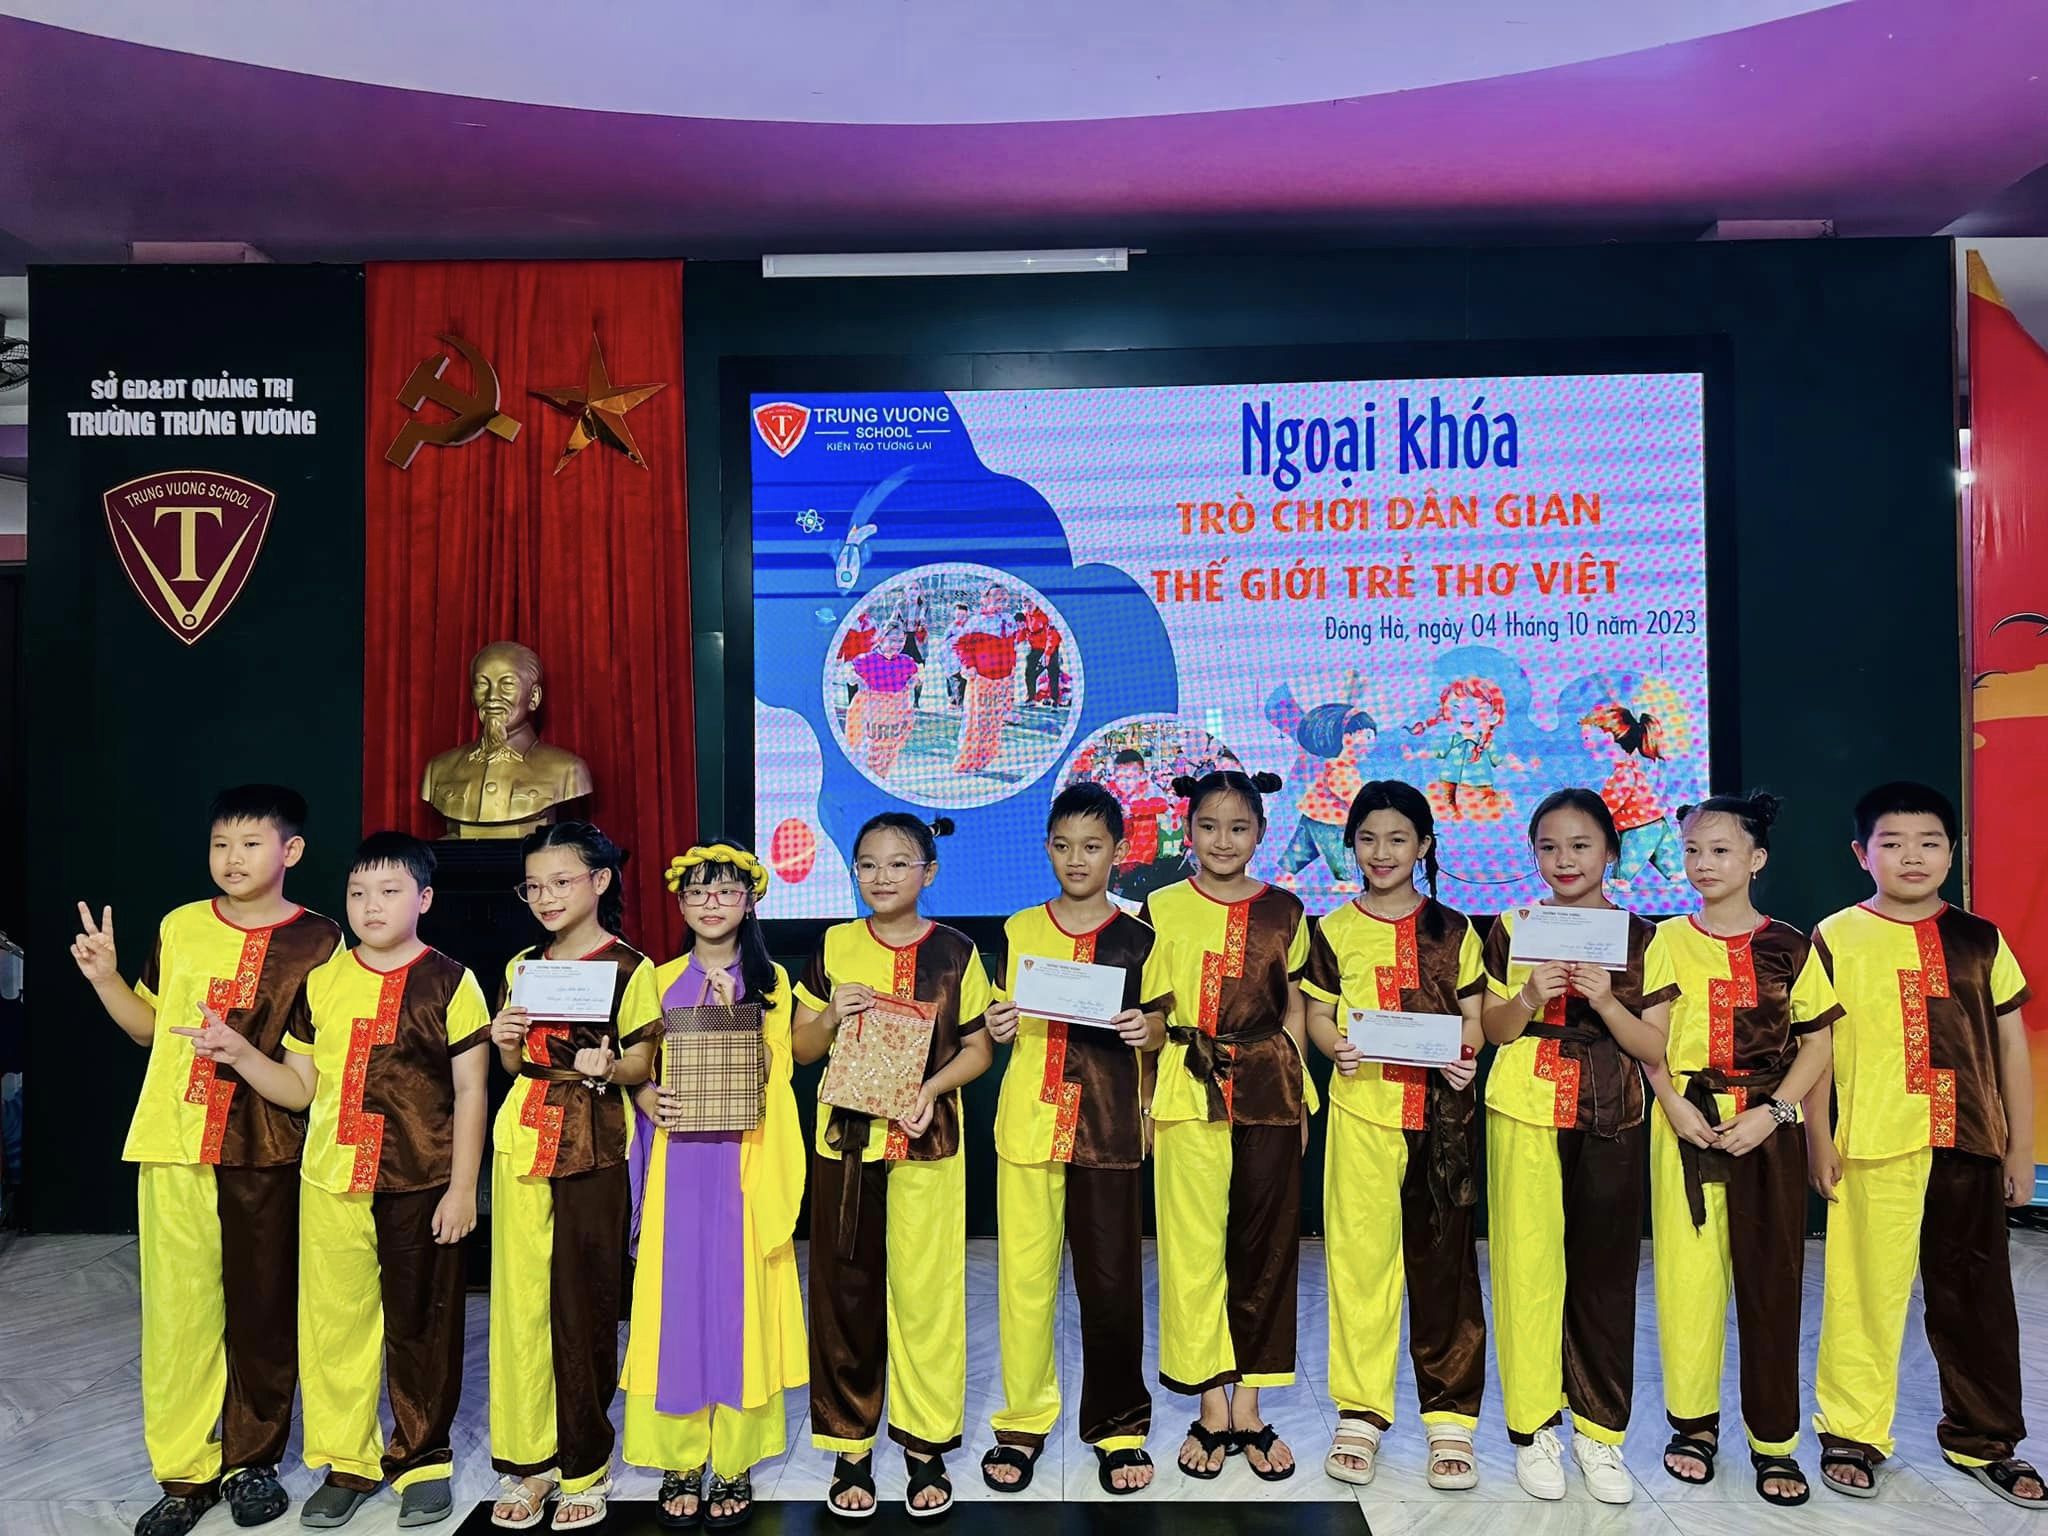 Trò chơi Dân gian - Thế giới trẻ thơ Việt 